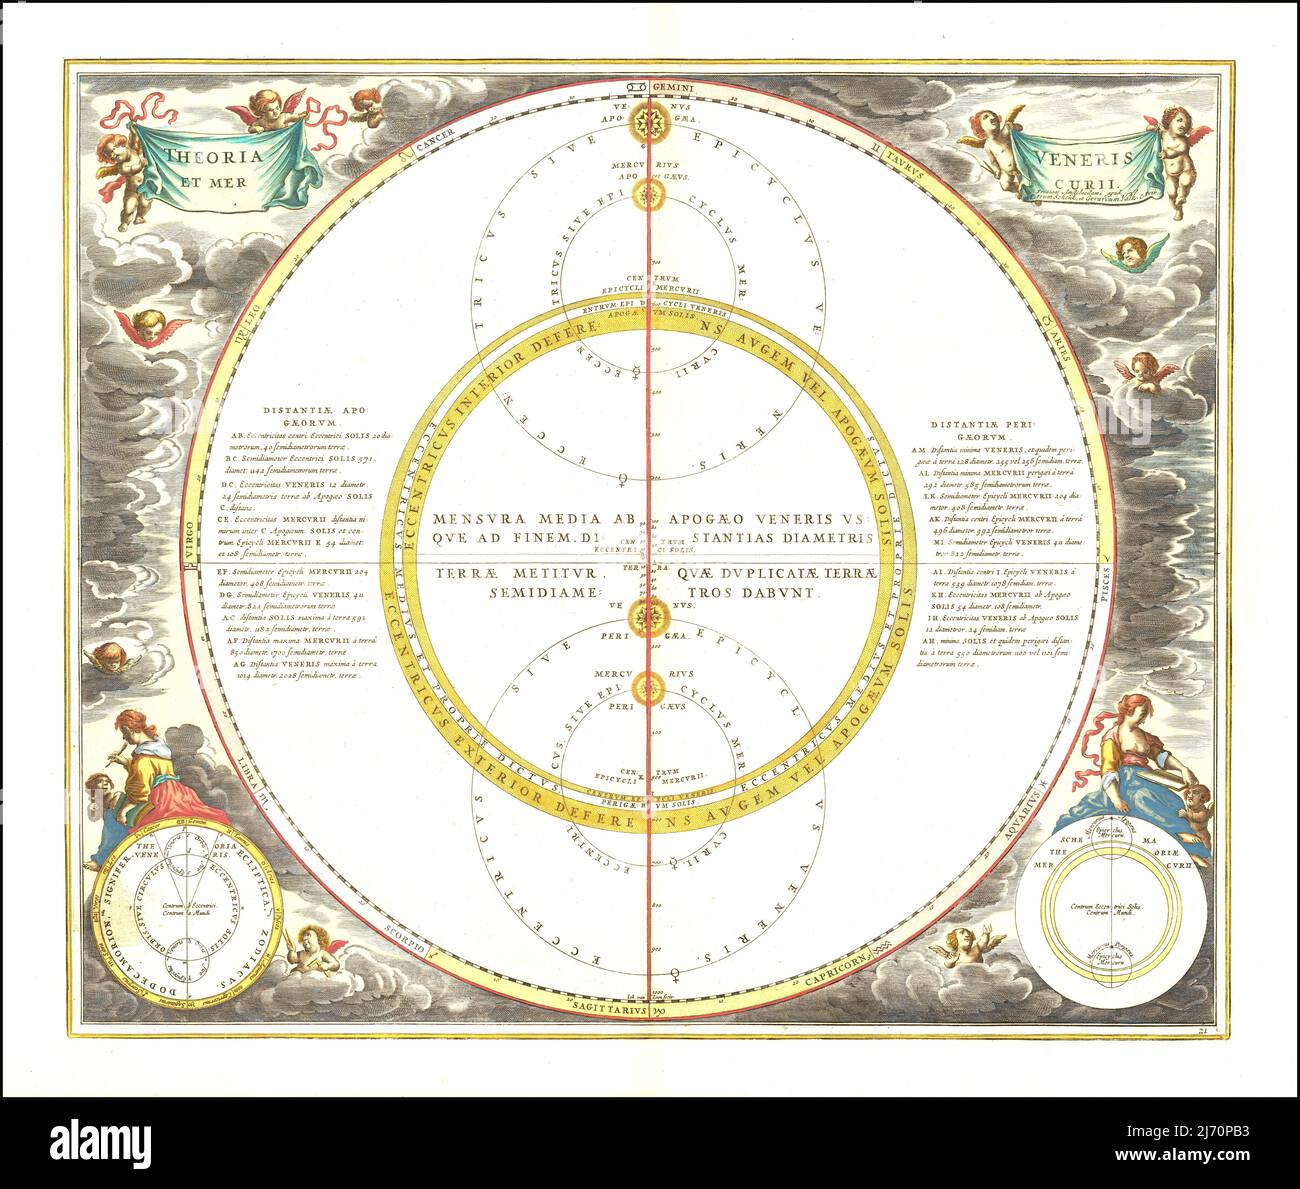 Andreas Cellarius - modello celeste che mostra i movimenti di Venere e Mercurio - 1661 Foto Stock